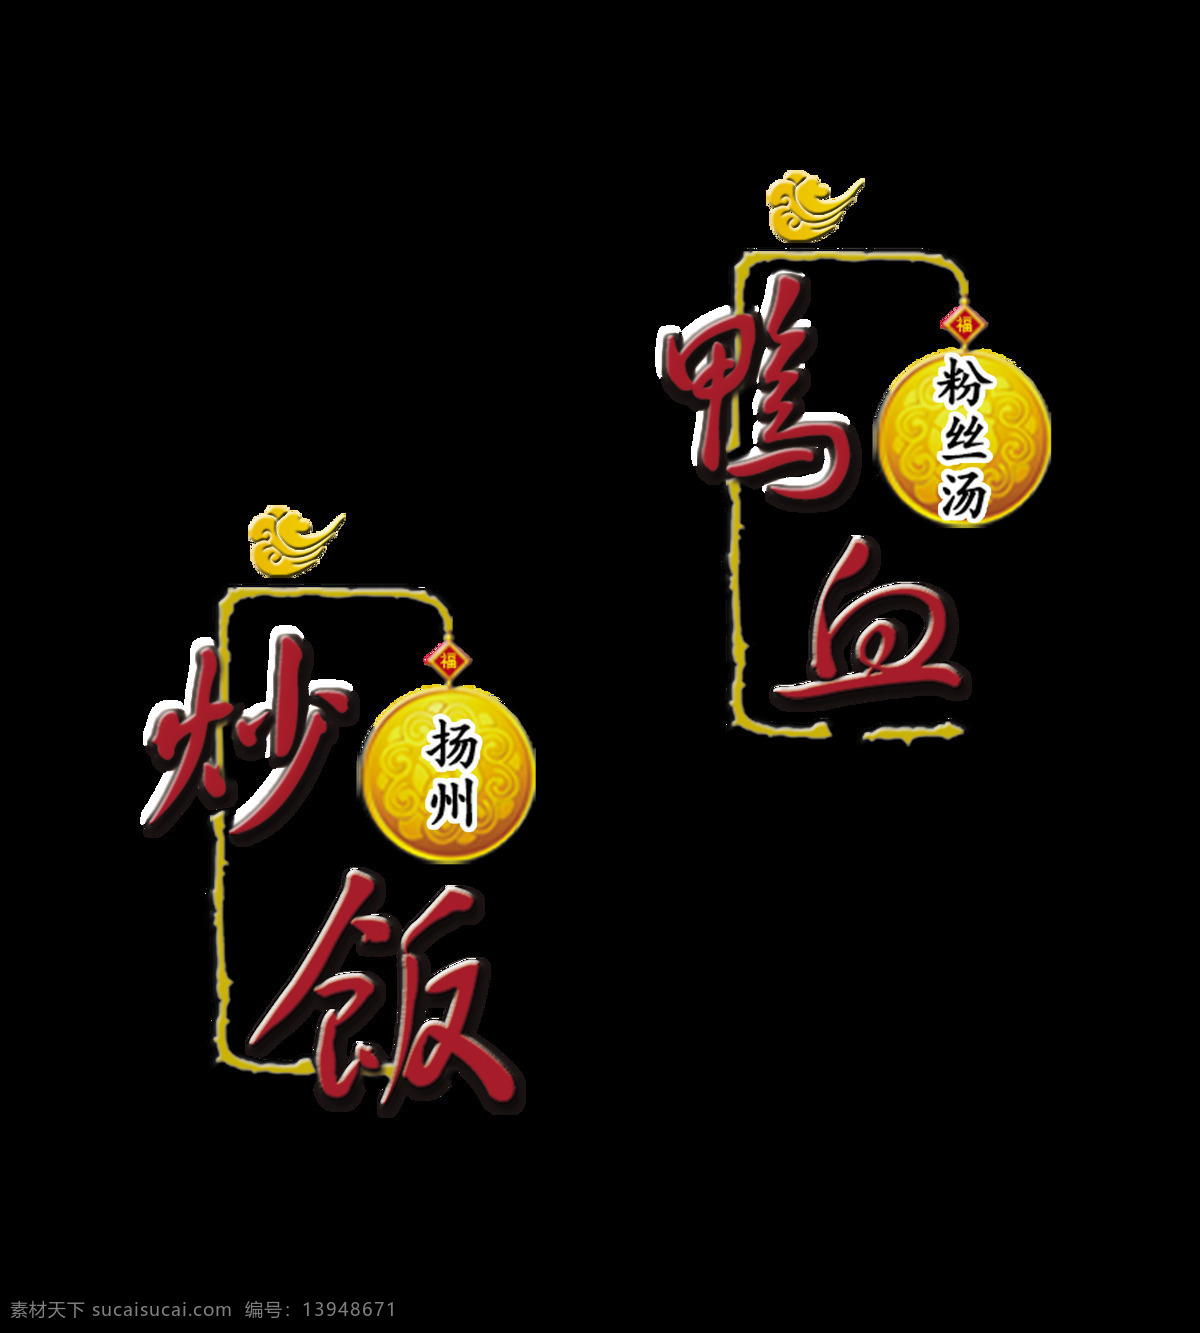 扬州 炒饭 鸭 血 粉丝 汤美 味美 食 艺术 字 字体 广告 宣传 促销 扬州炒饭 鸭血粉丝汤 美味美食 艺术字 中国风 海报